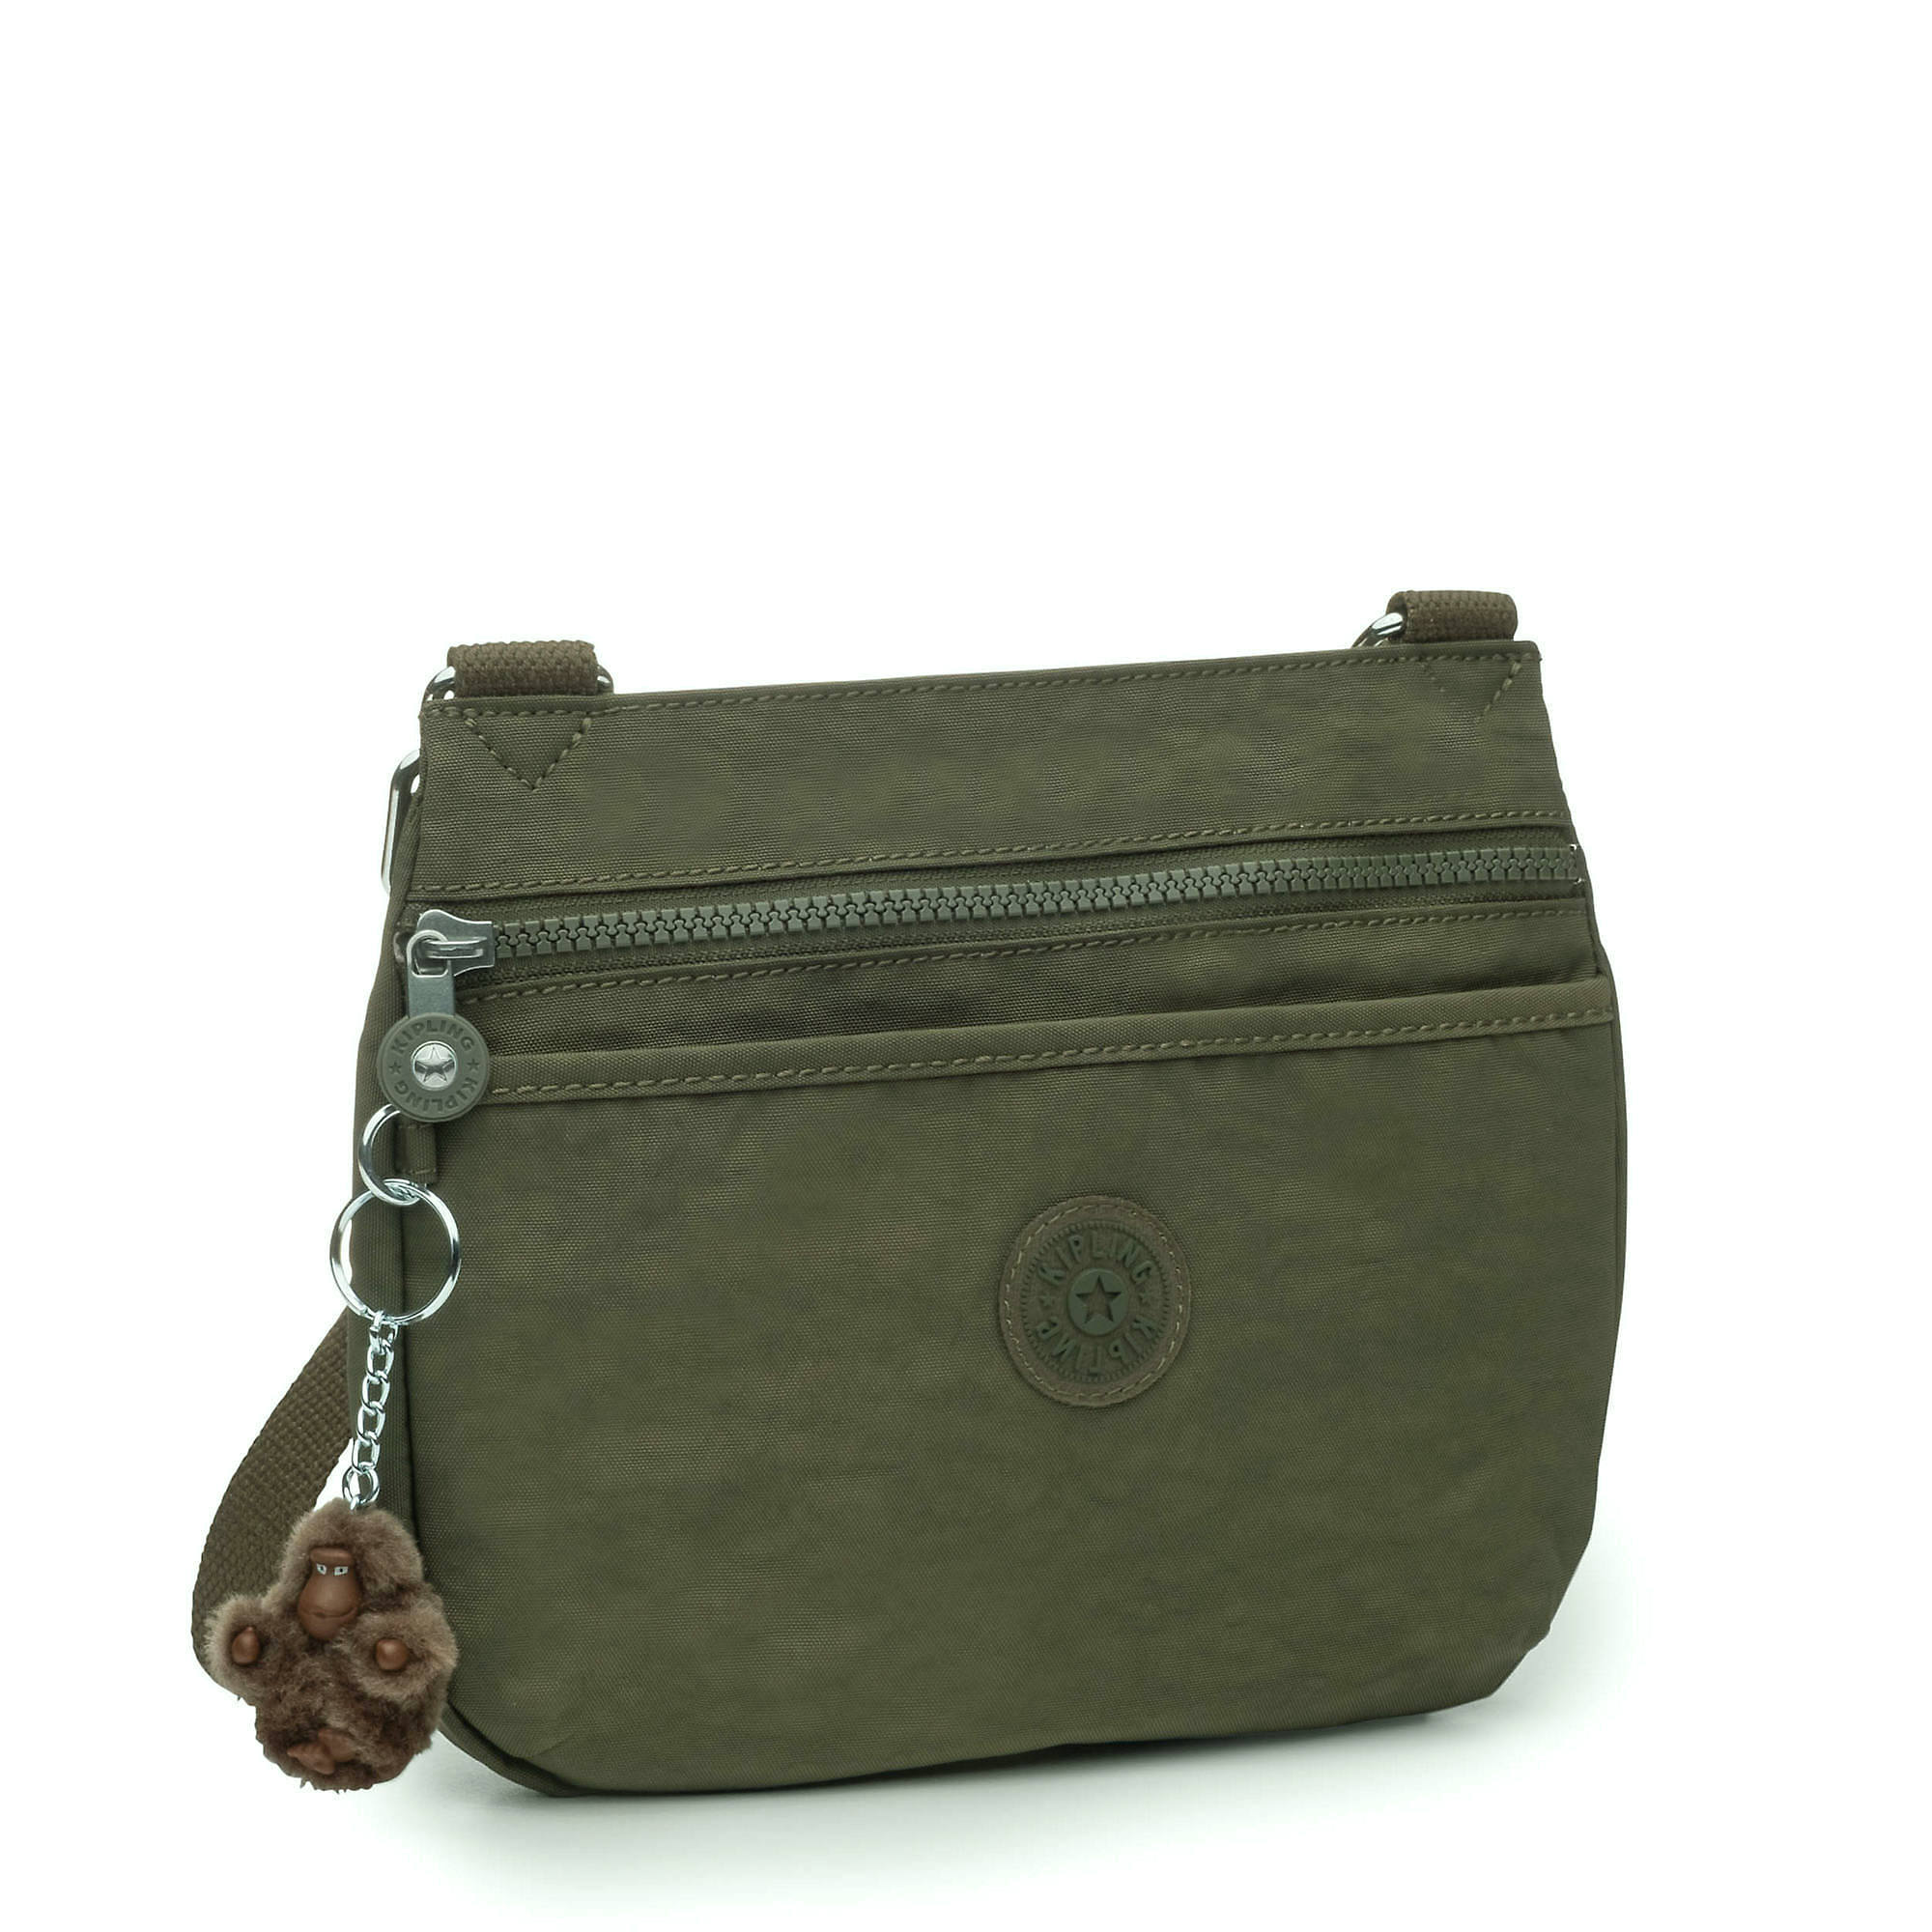 Kipling Emmylou Crossbody Bag | eBay